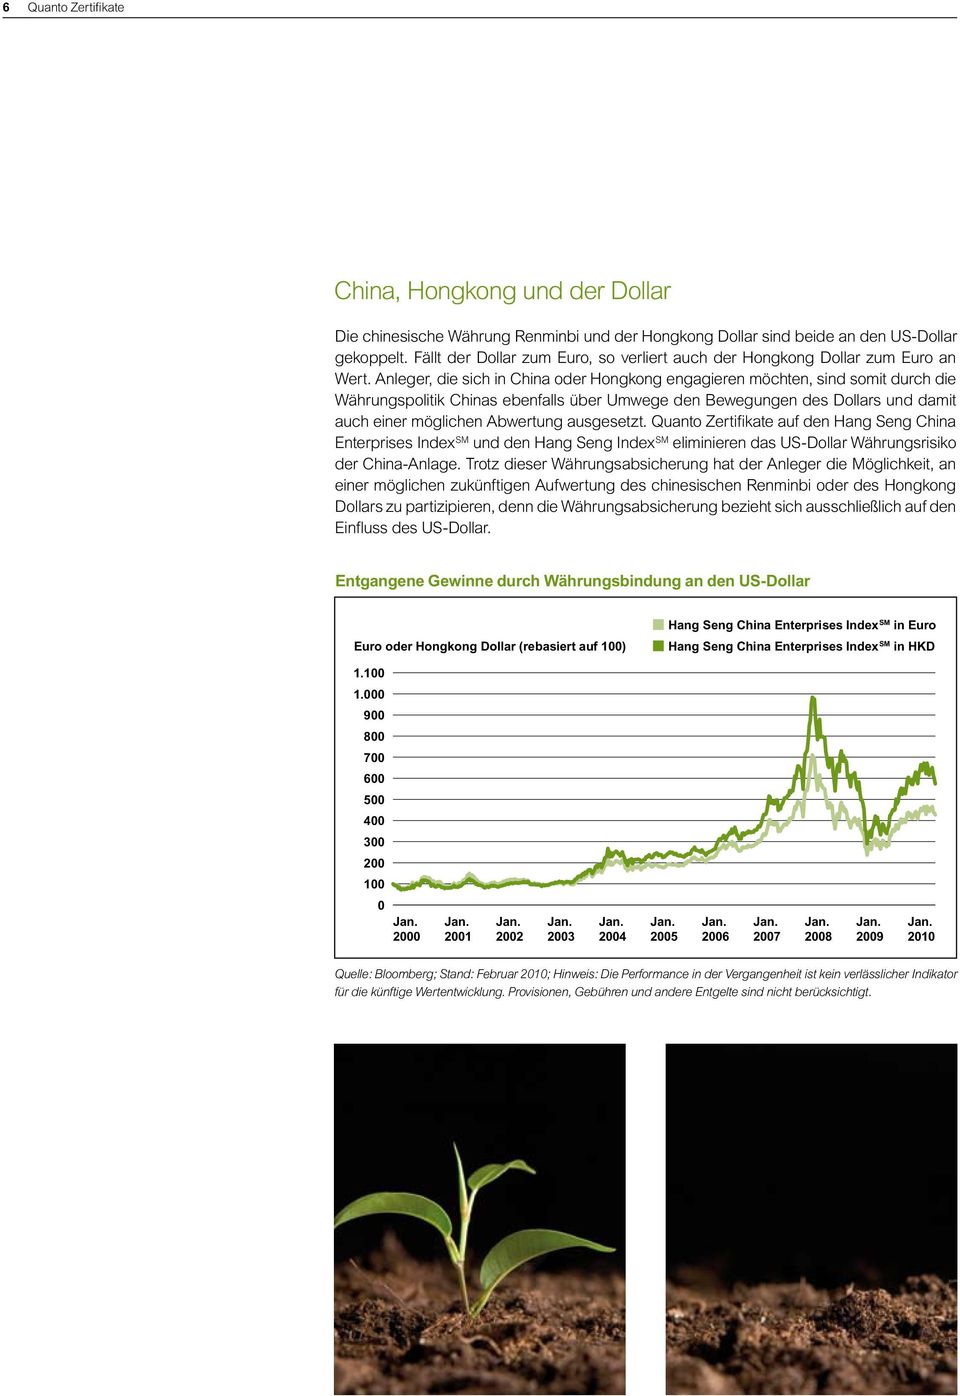 Anleger, die sich in China oder Hongkong engagieren möchten, sind somit durch die Währungspolitik Chinas ebenfalls über Umwege den Bewegungen des Dollars und damit auch einer möglichen Abwertung